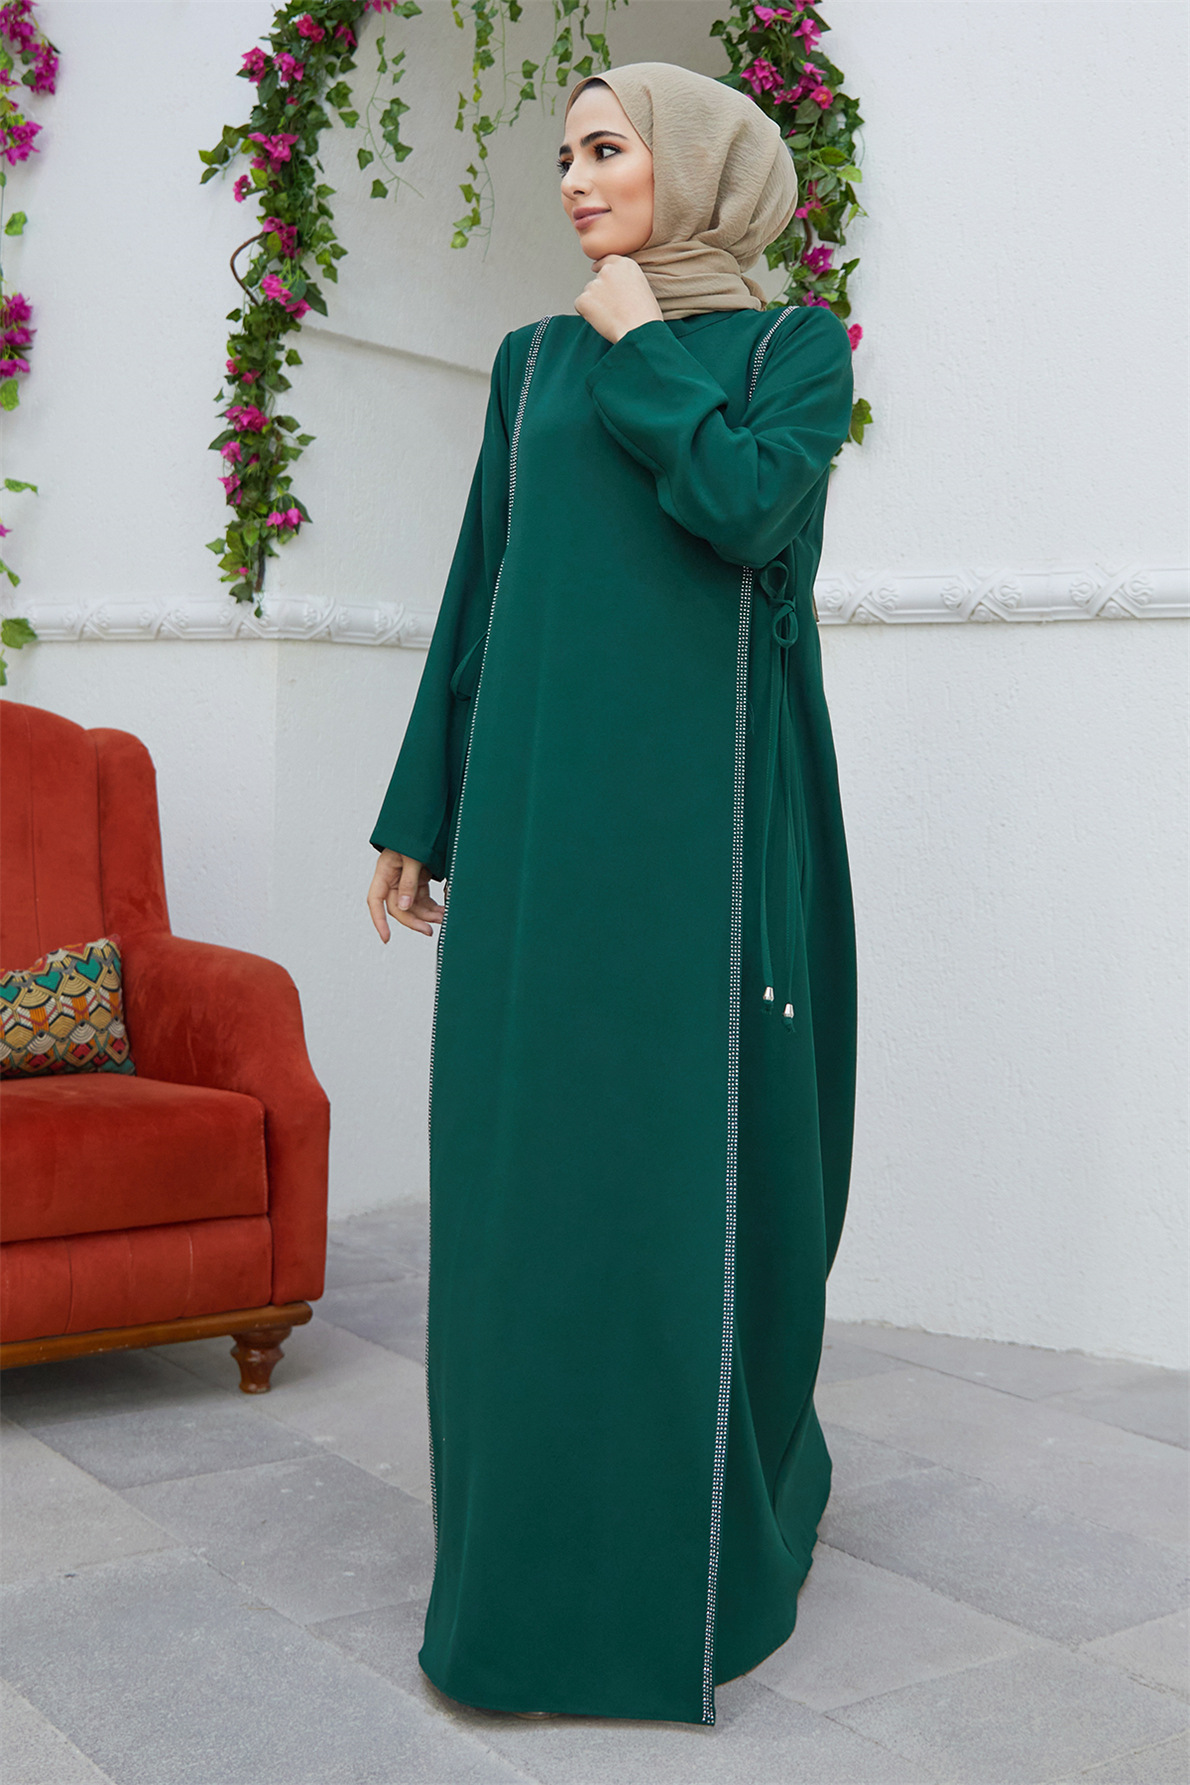 中东迪拜裙阿拉伯沙特回族长袍烫钻束腰连衣裙女 girdling robe - 图2